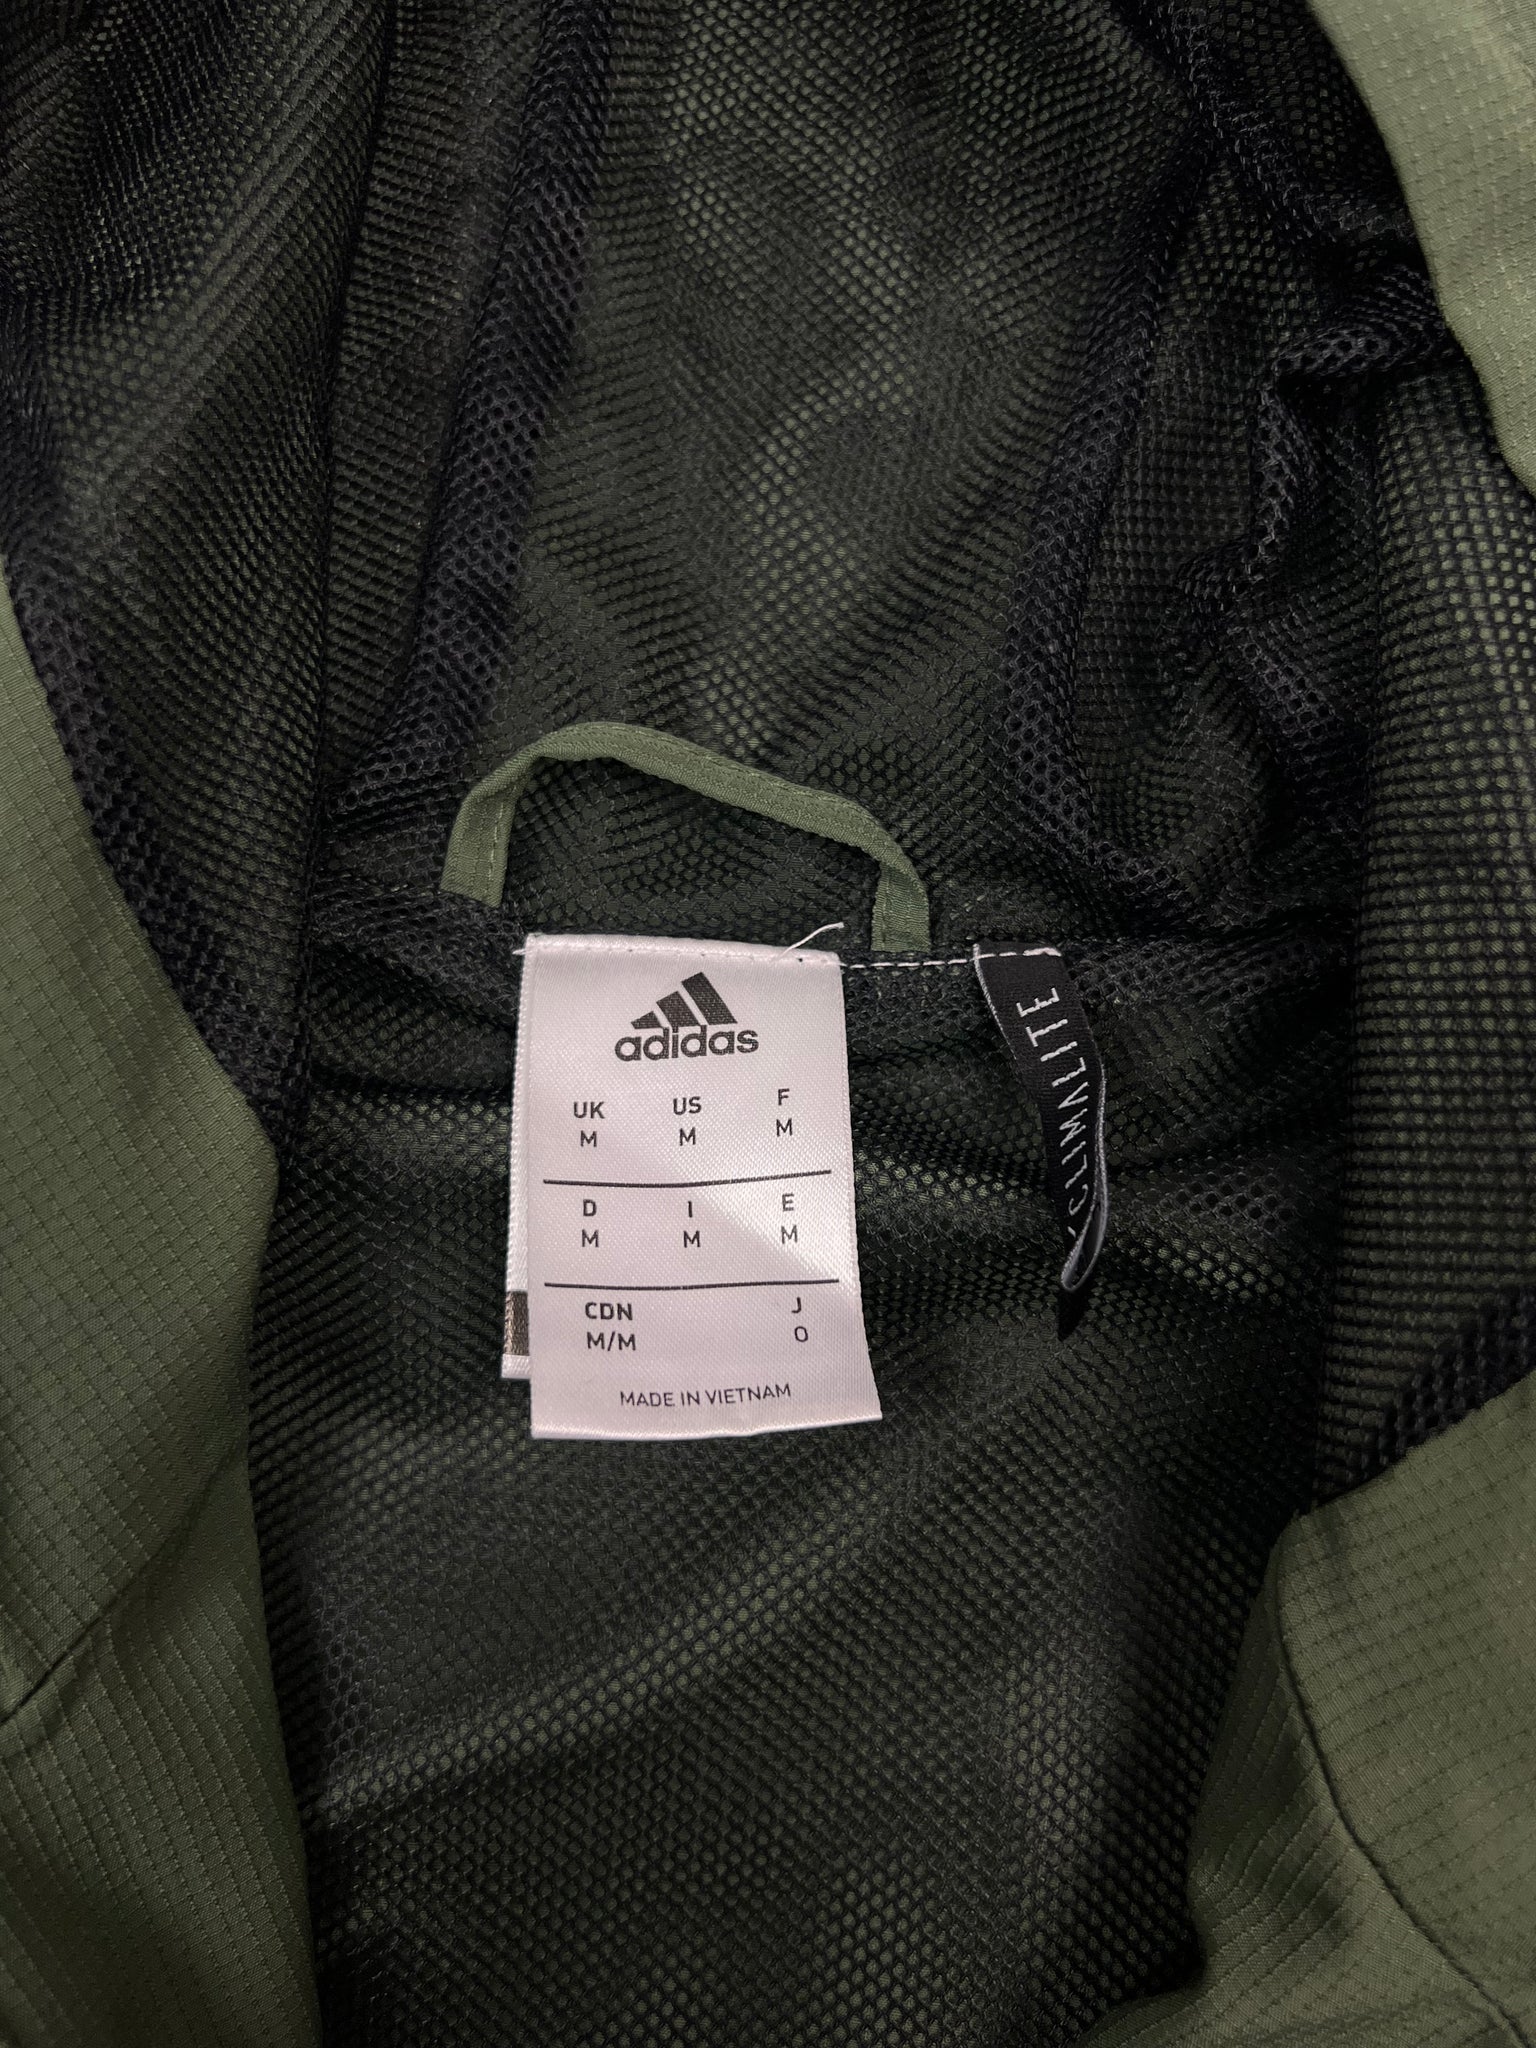 Adidas Juventus Track Jacket (M)